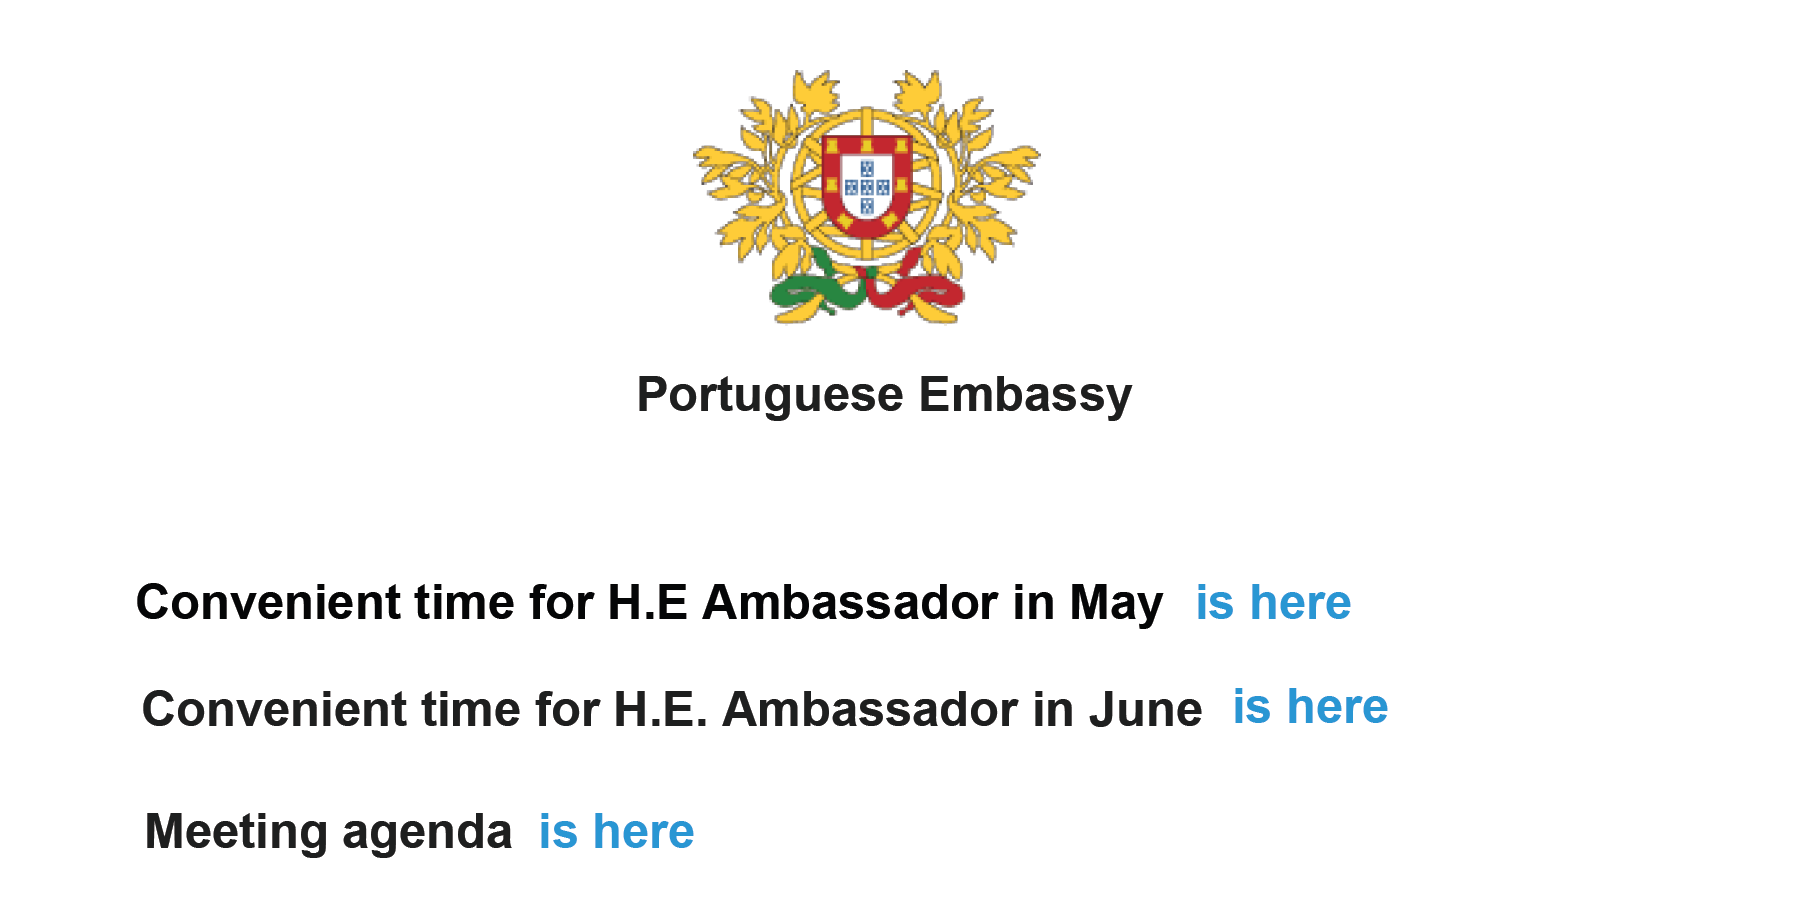 File di richiamo dell'ambasciata portoghese.  L'e-mail mostrata sembra fornire un collegamento all'ordine del giorno di un prossimo incontro con un ambasciatore in Portogallo.